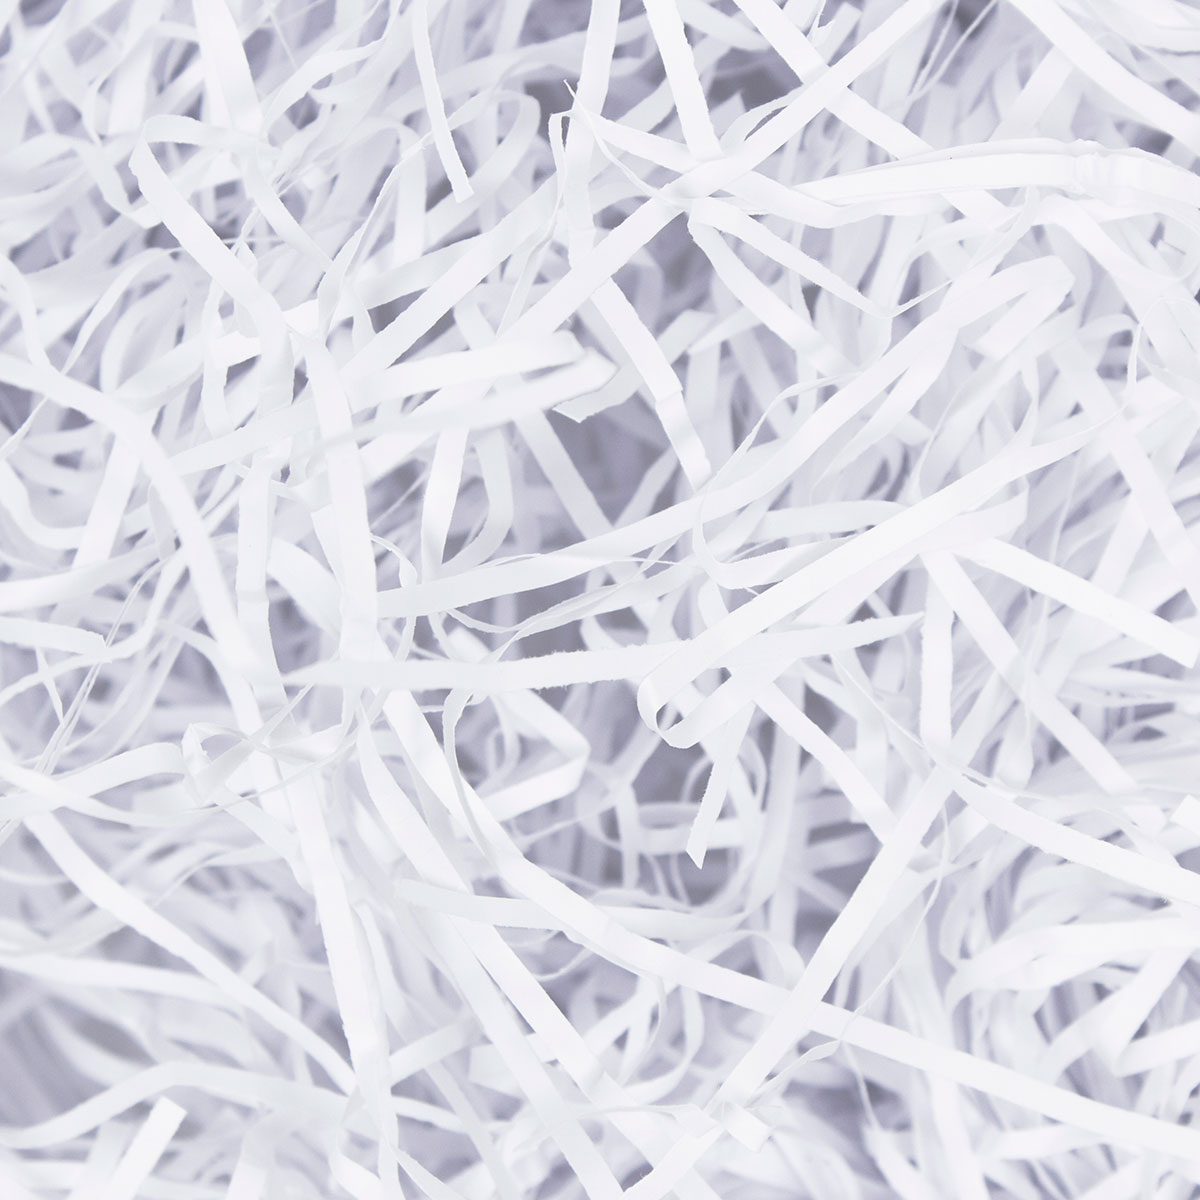 White Shredded Tissue Paper